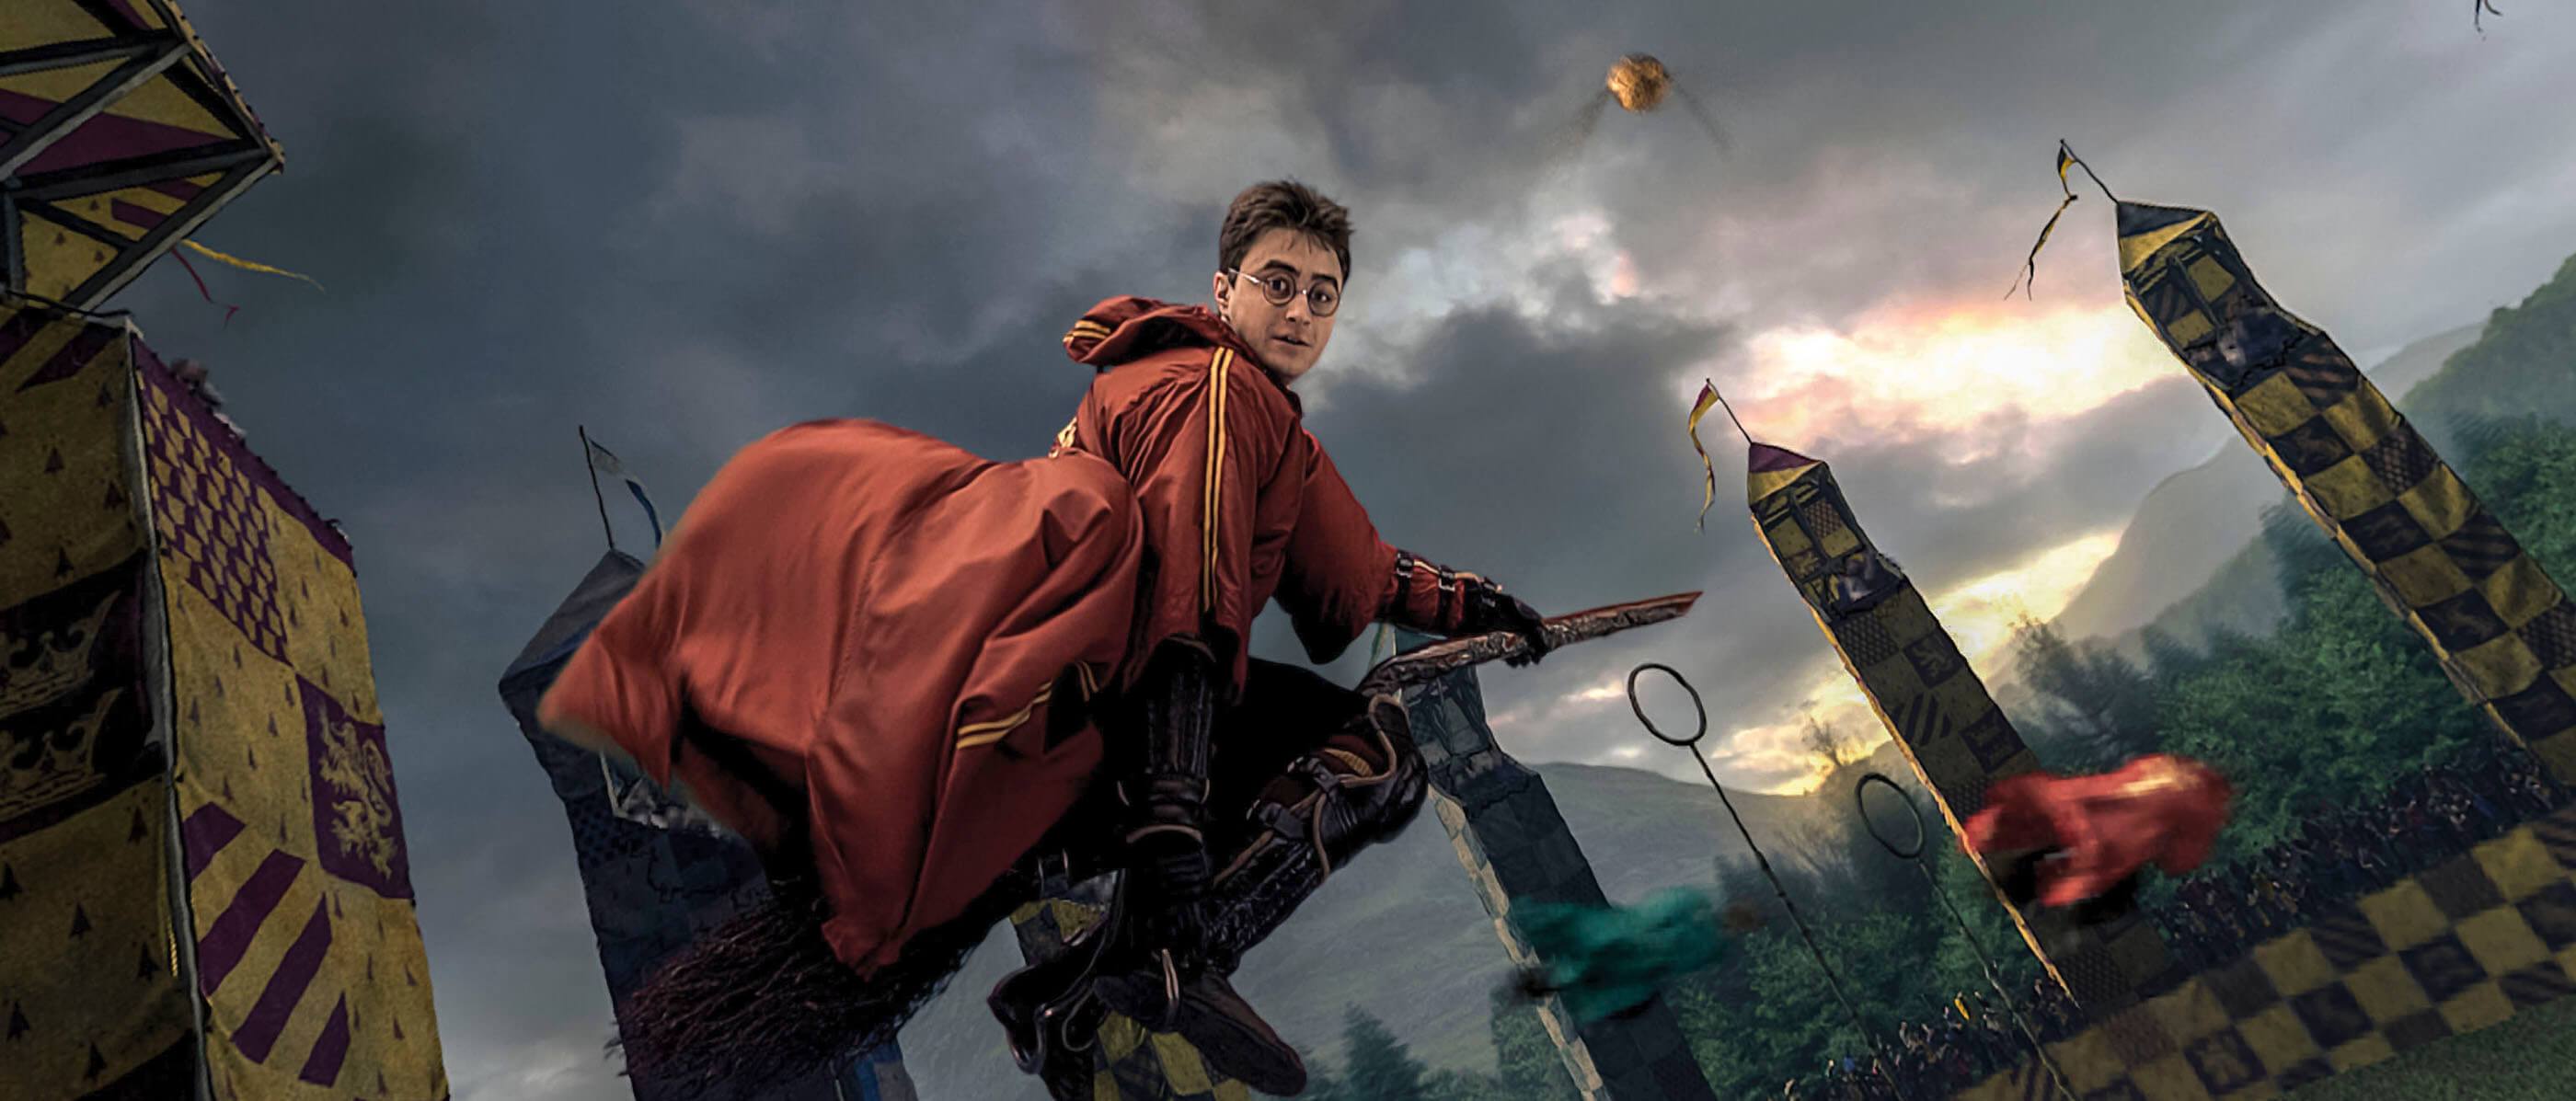 Rumor: Harry Potter open-world action RPG gameplay video leaked